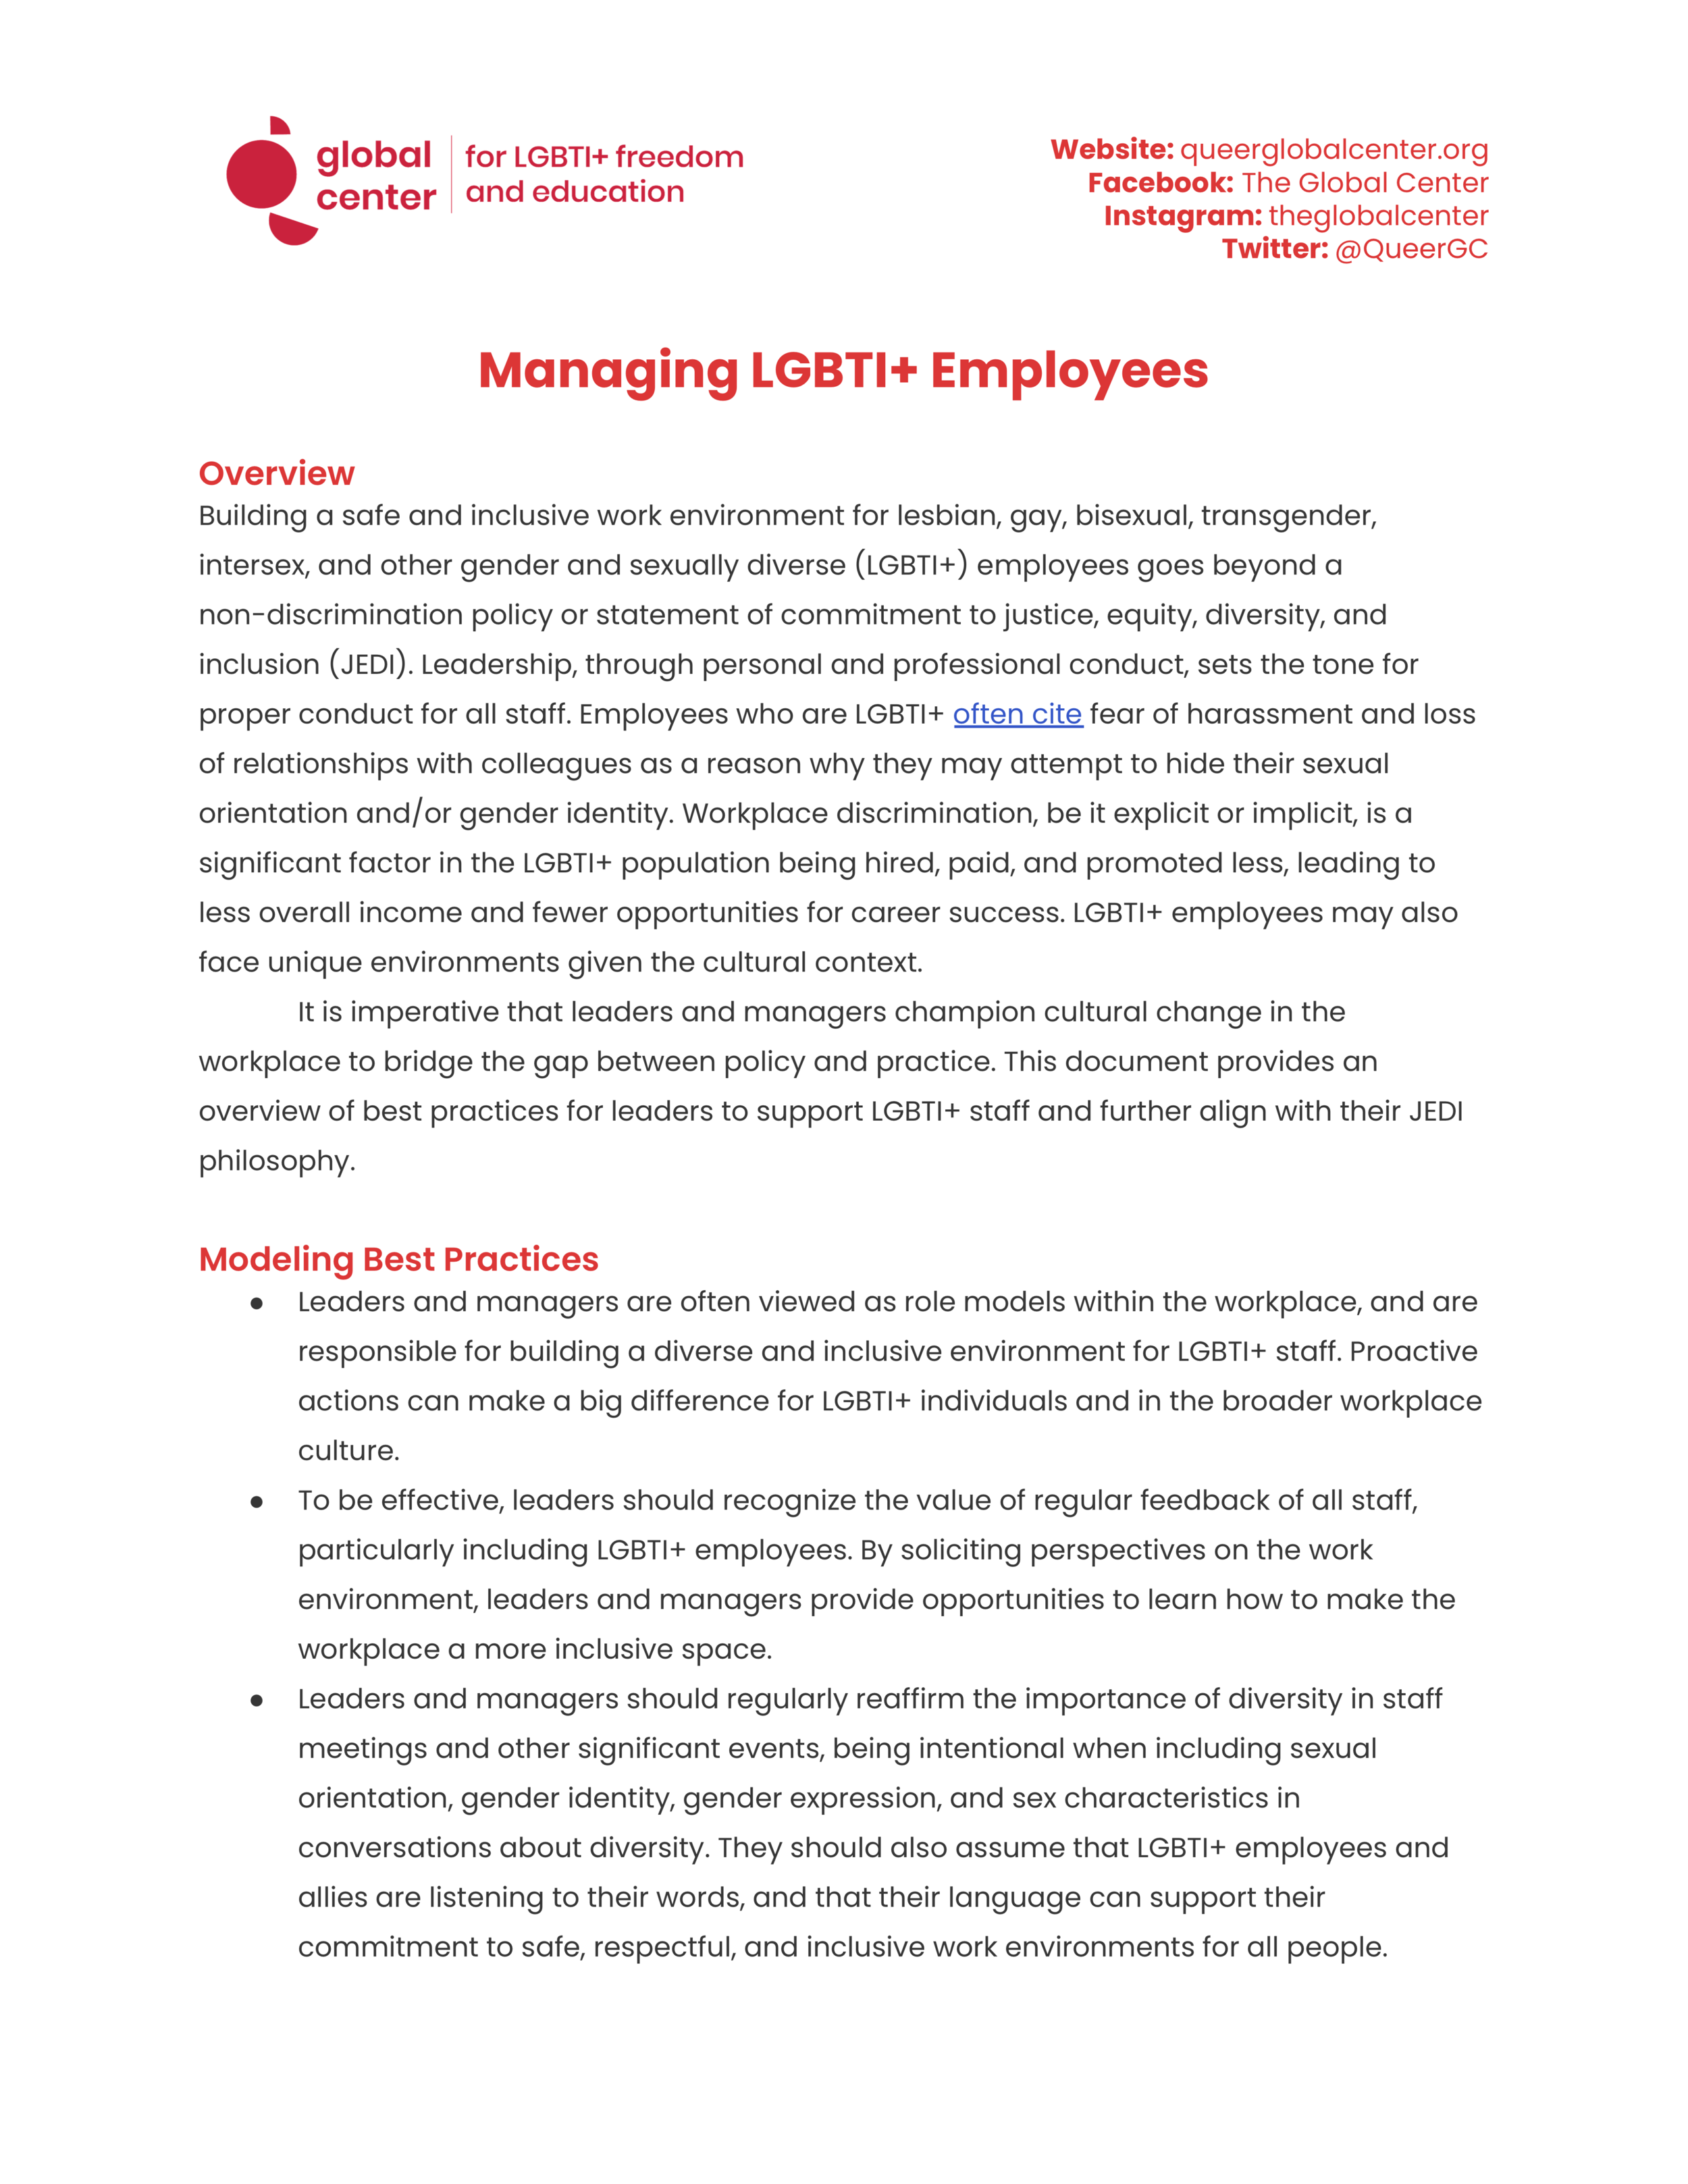 Managing LGBTI+ Employees